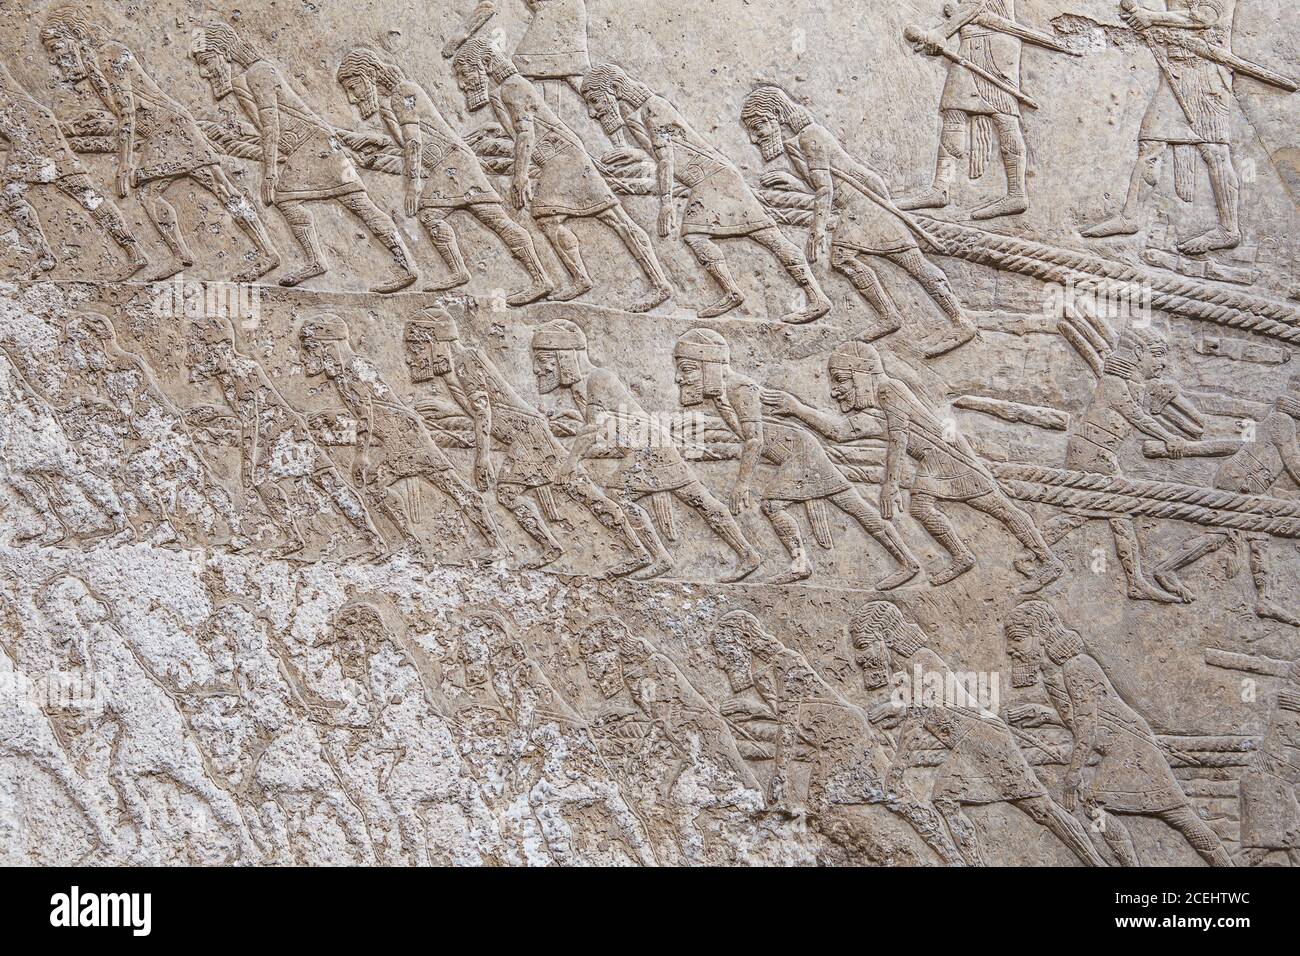 Alte assyrische Steinschnitzerei mit Schrift, BRITISH MUSEUM, London, UK. Wahlkampf im Südirak, Assyrisch, etwa 640-620 v. Chr. von Ninive Stockfoto